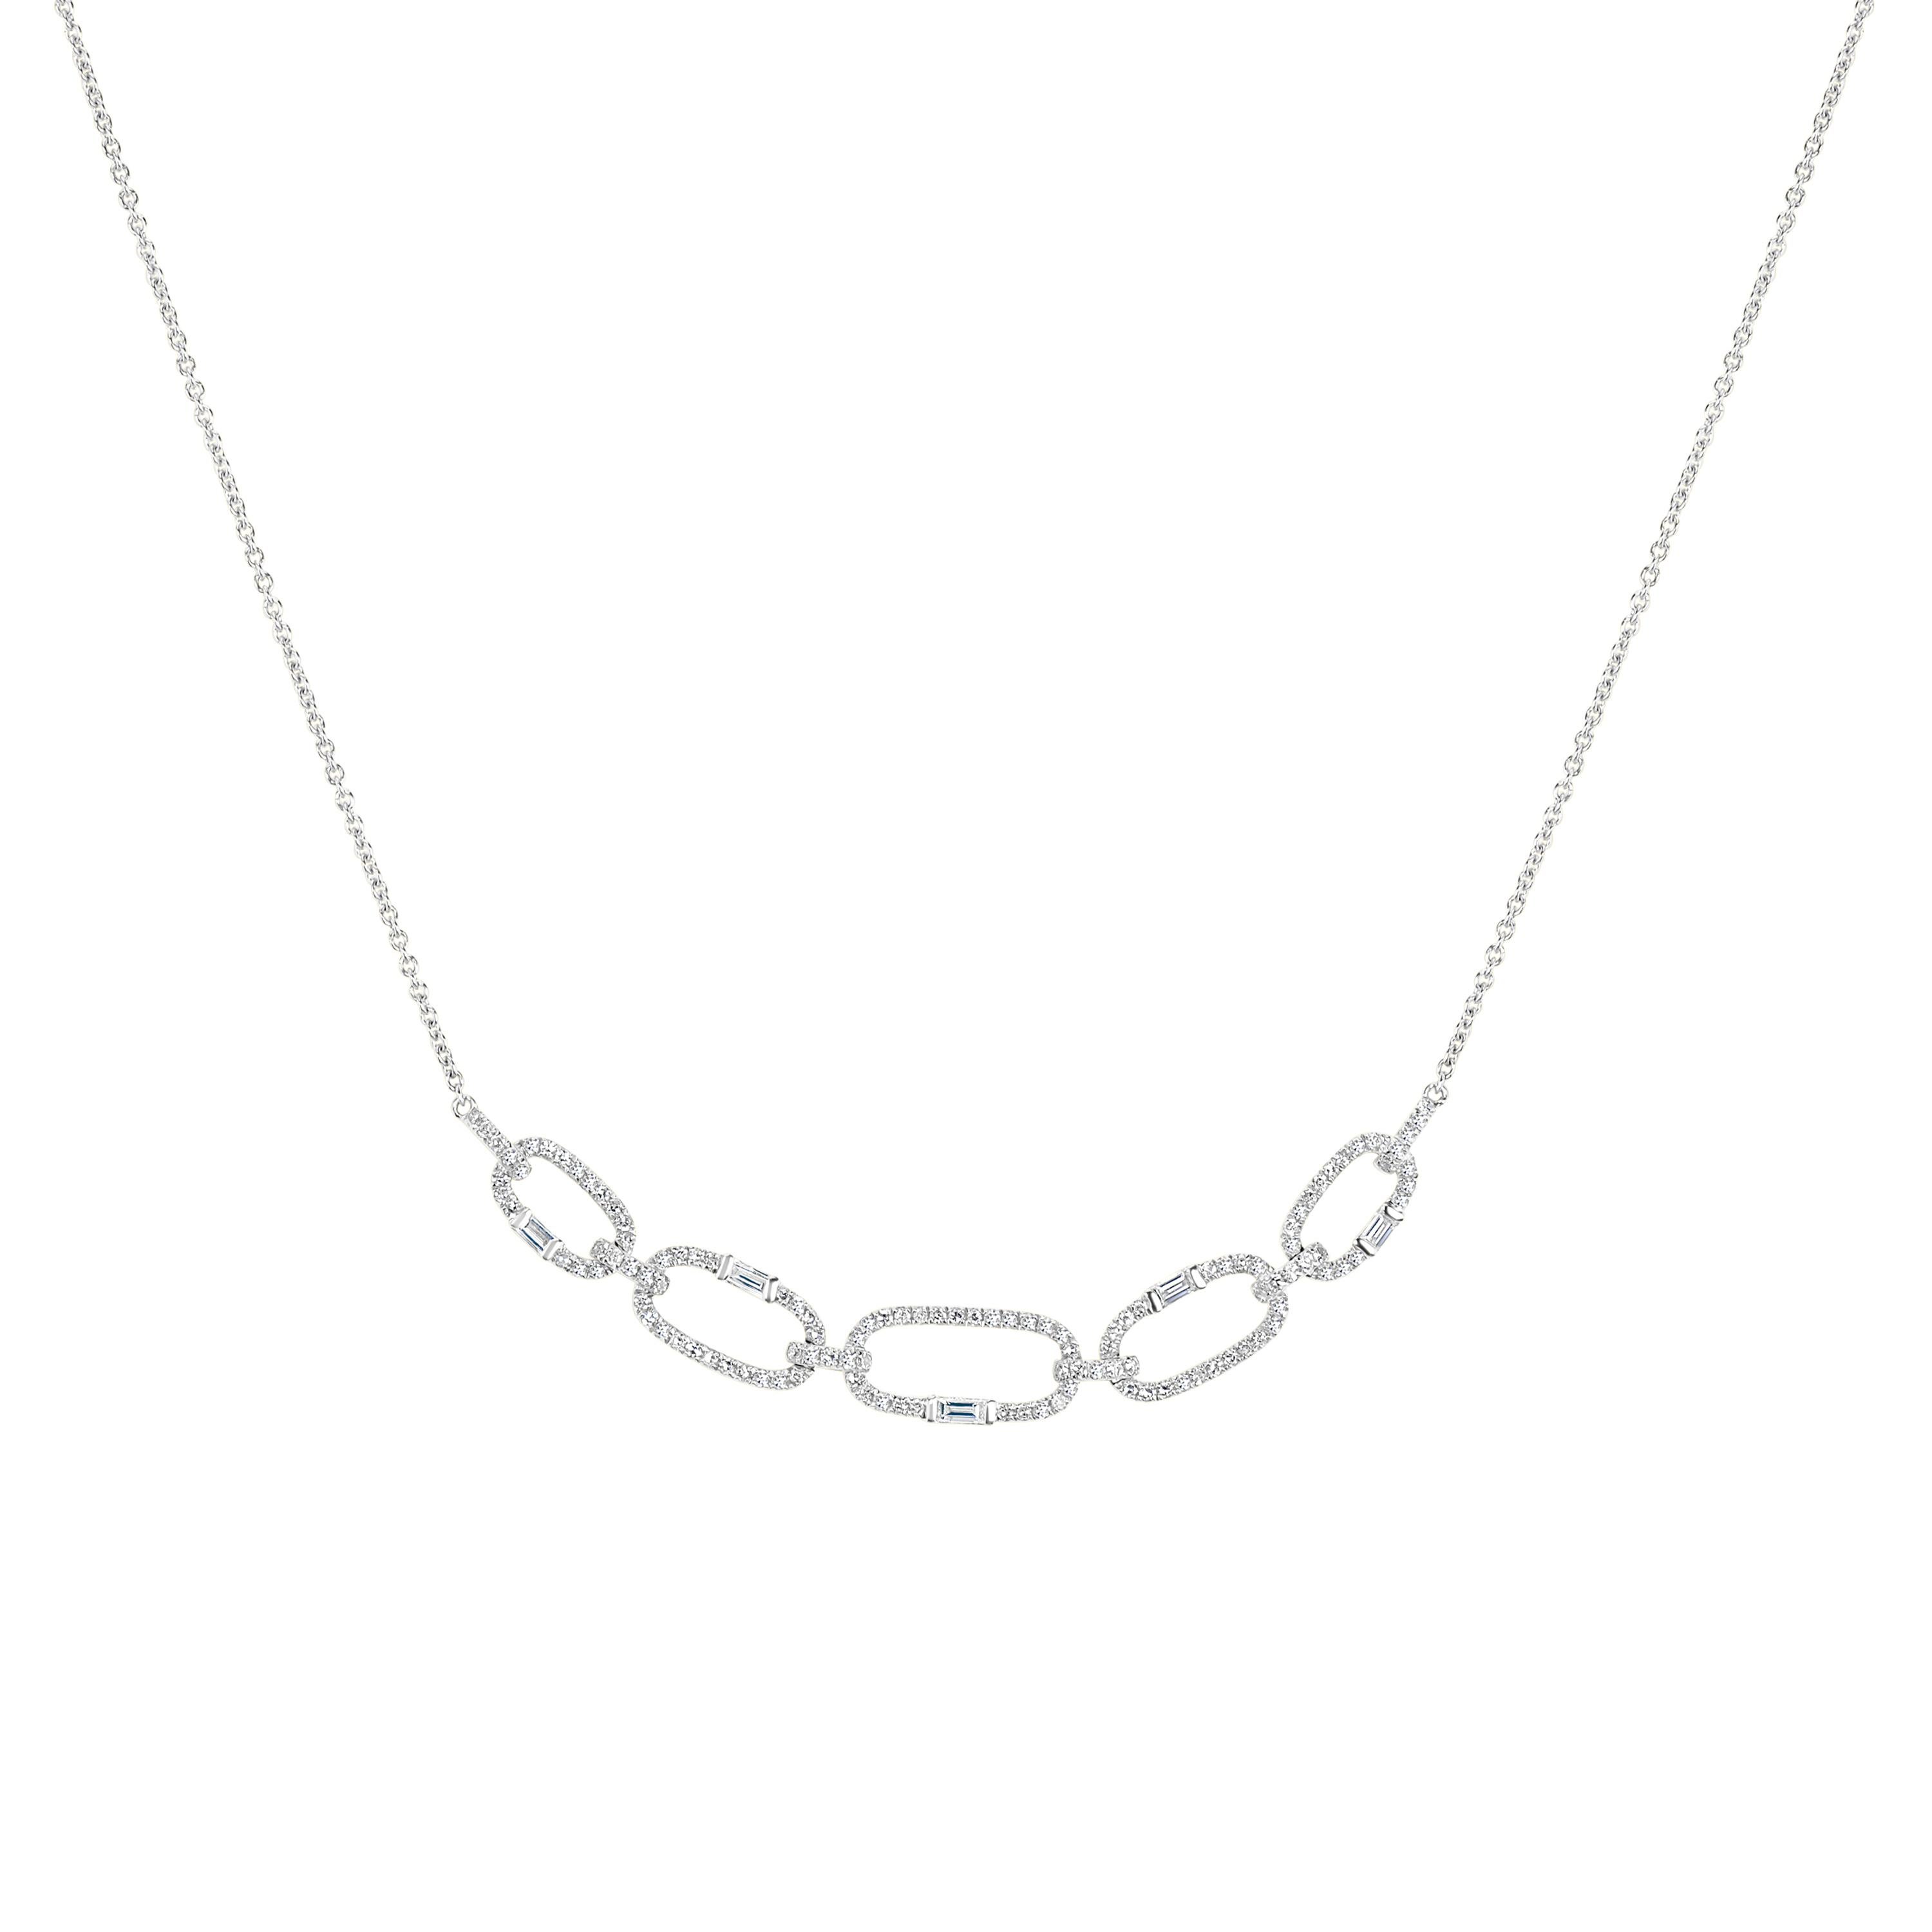 Baguette Cut Luxle 0.45 Cttw. Round and Baguette Diamond Link Pendant Necklace in 14k Gold